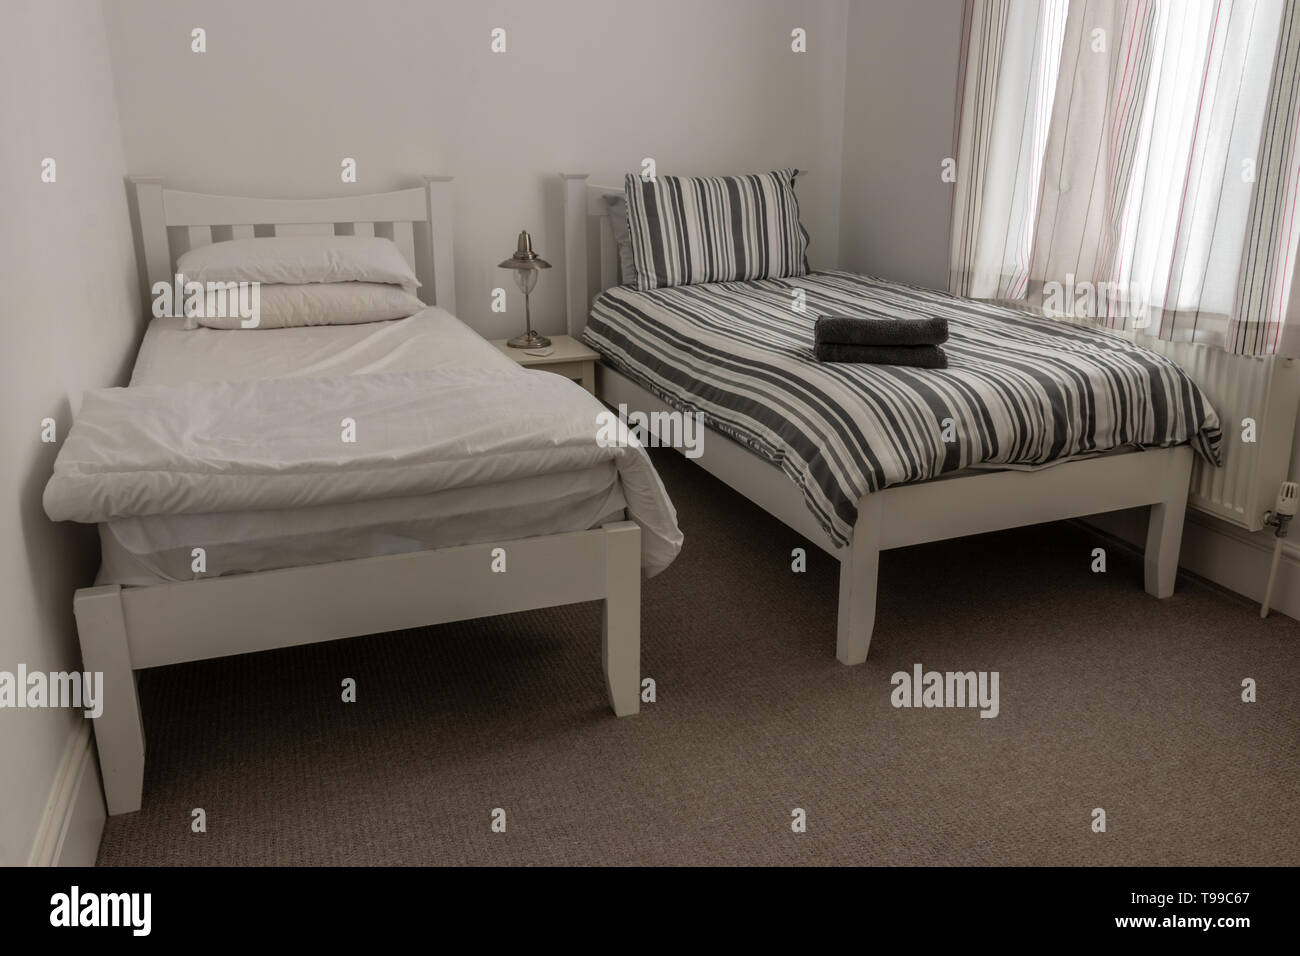 2 Einzelbetten nebeneinander in einem Schlafzimmer Stockfotografie - Alamy